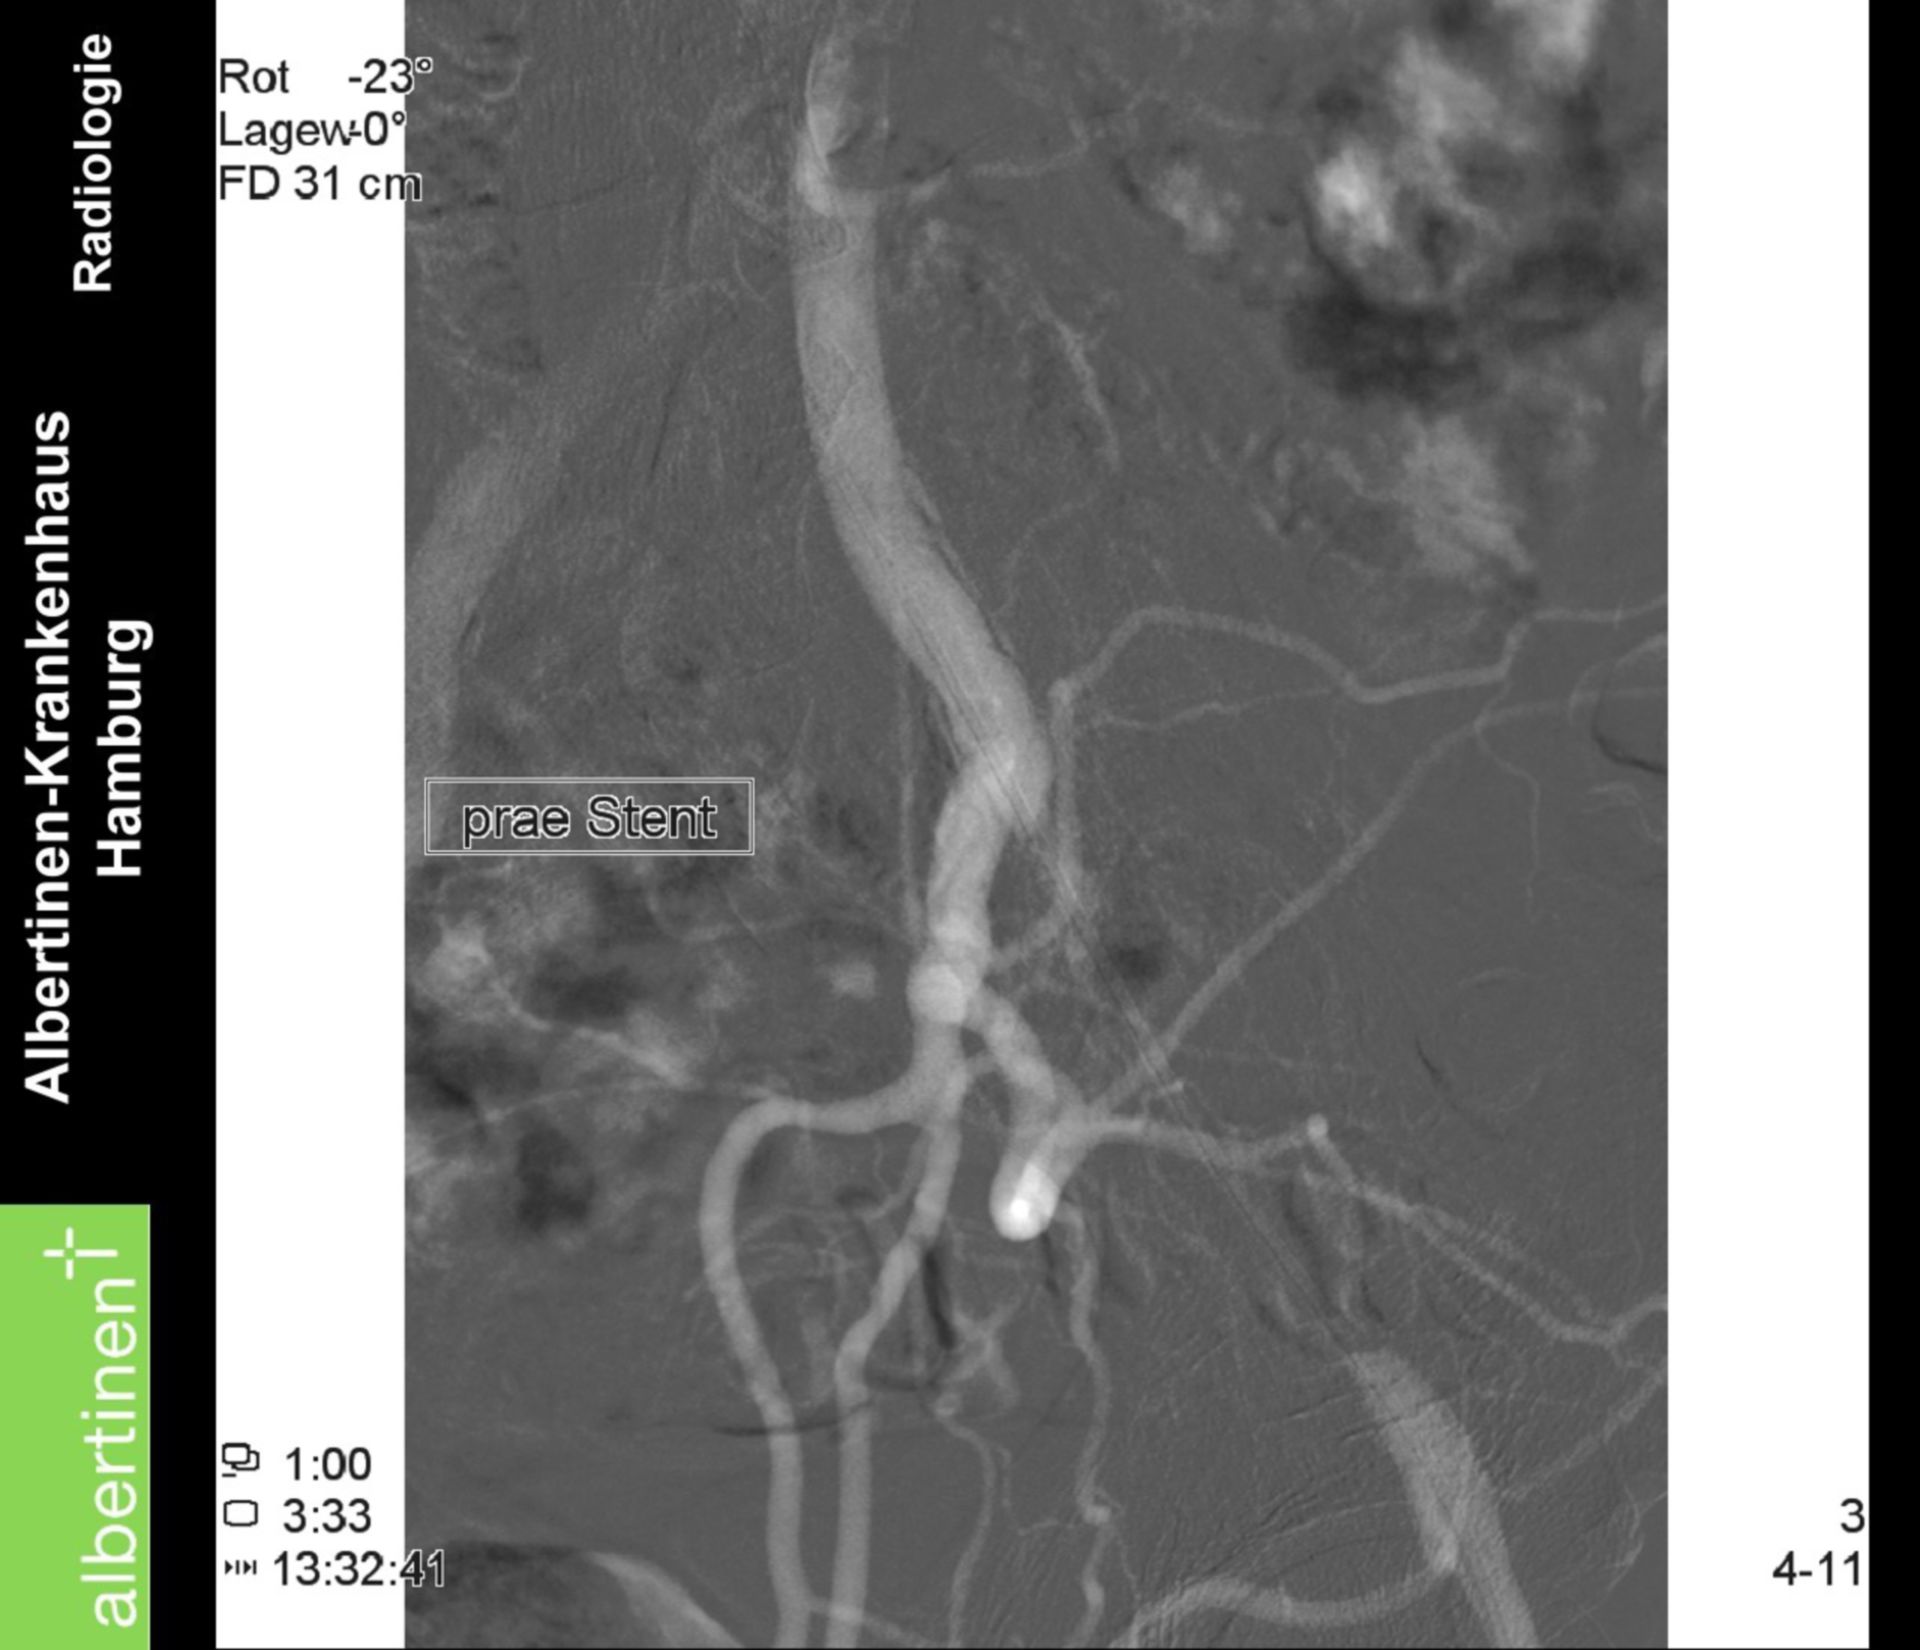 Angiografia digitale a sottrazione - occlusione prima di stent